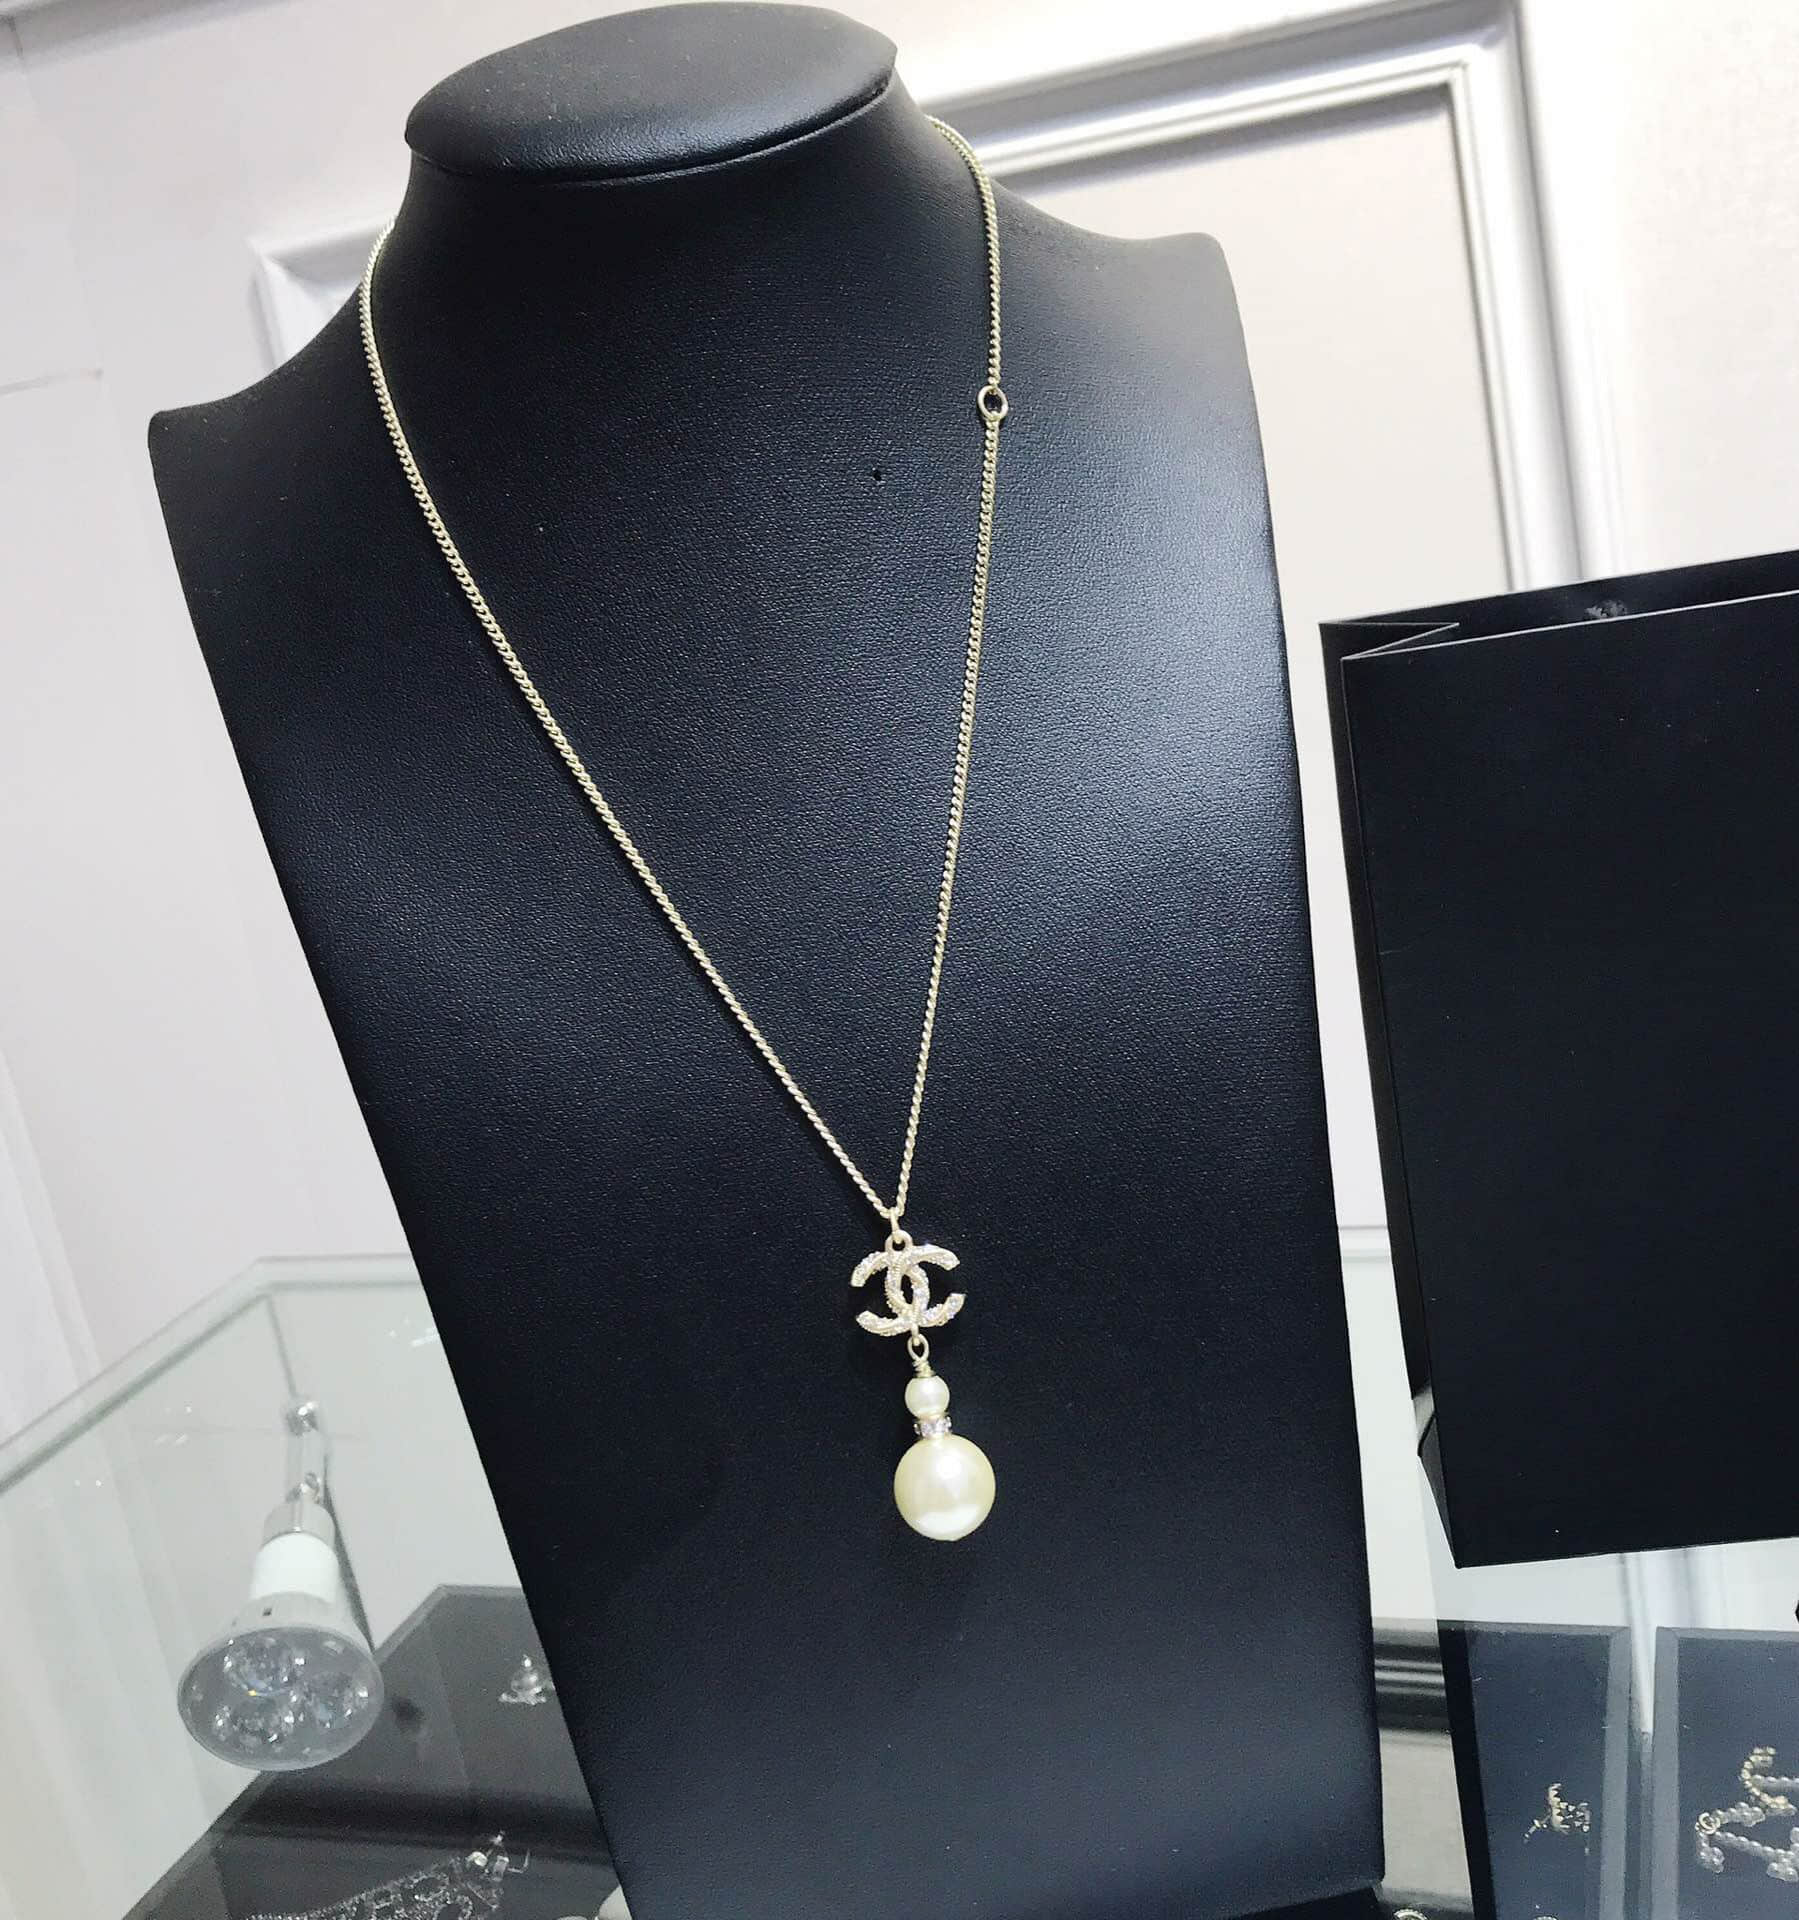 CHANEL香奈儿 专柜一致黄铜材质双c珍珠项链